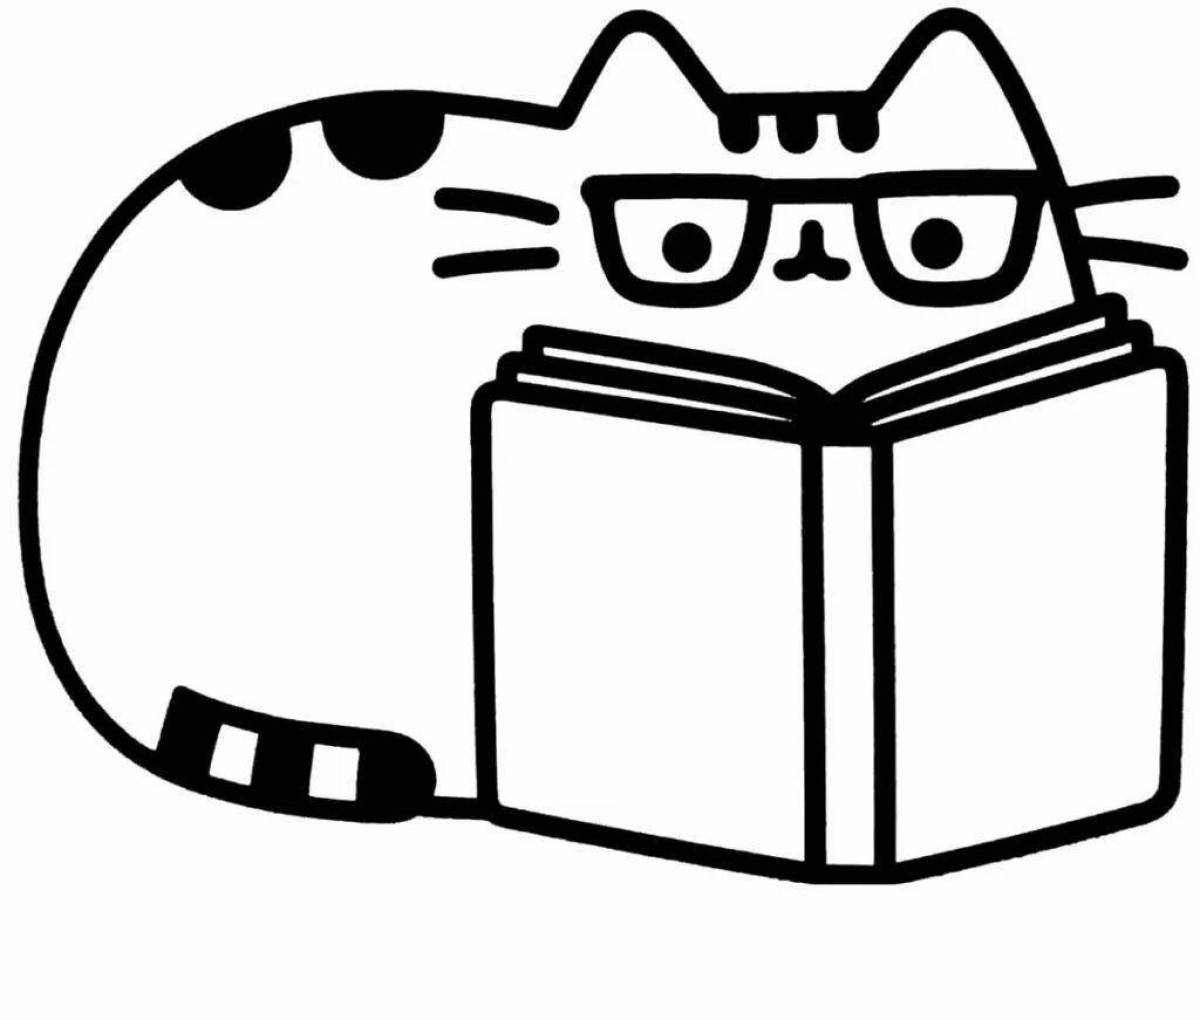 Cute cat fur coloring book